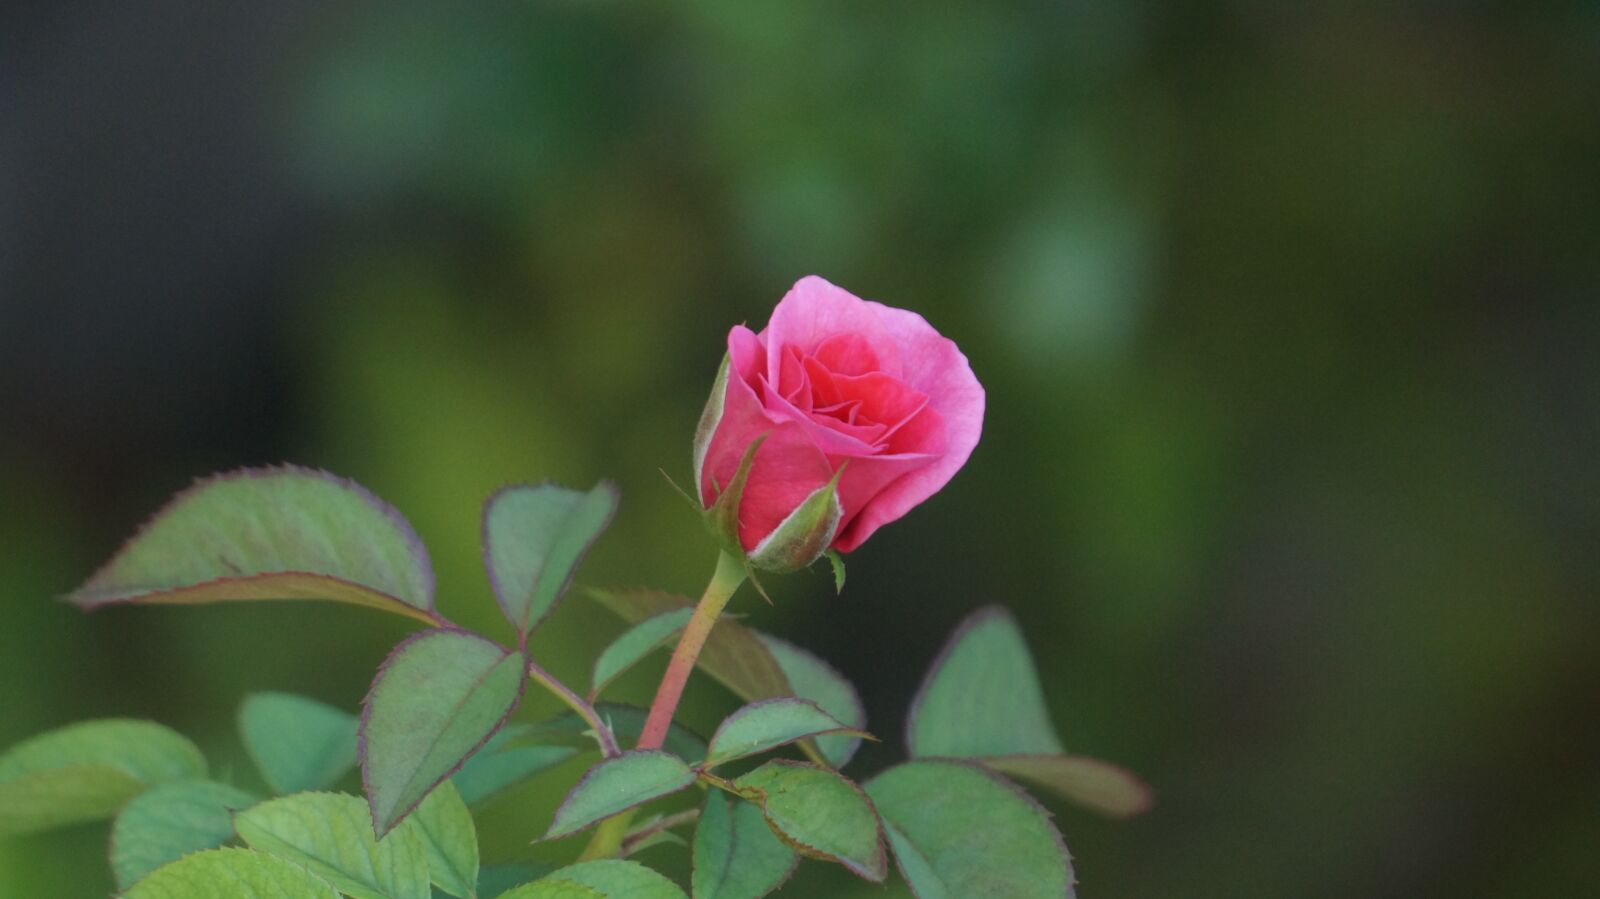 Sony E 18-200mm F3.5-6.3 OSS sample photo. Rose, flower, weak photography